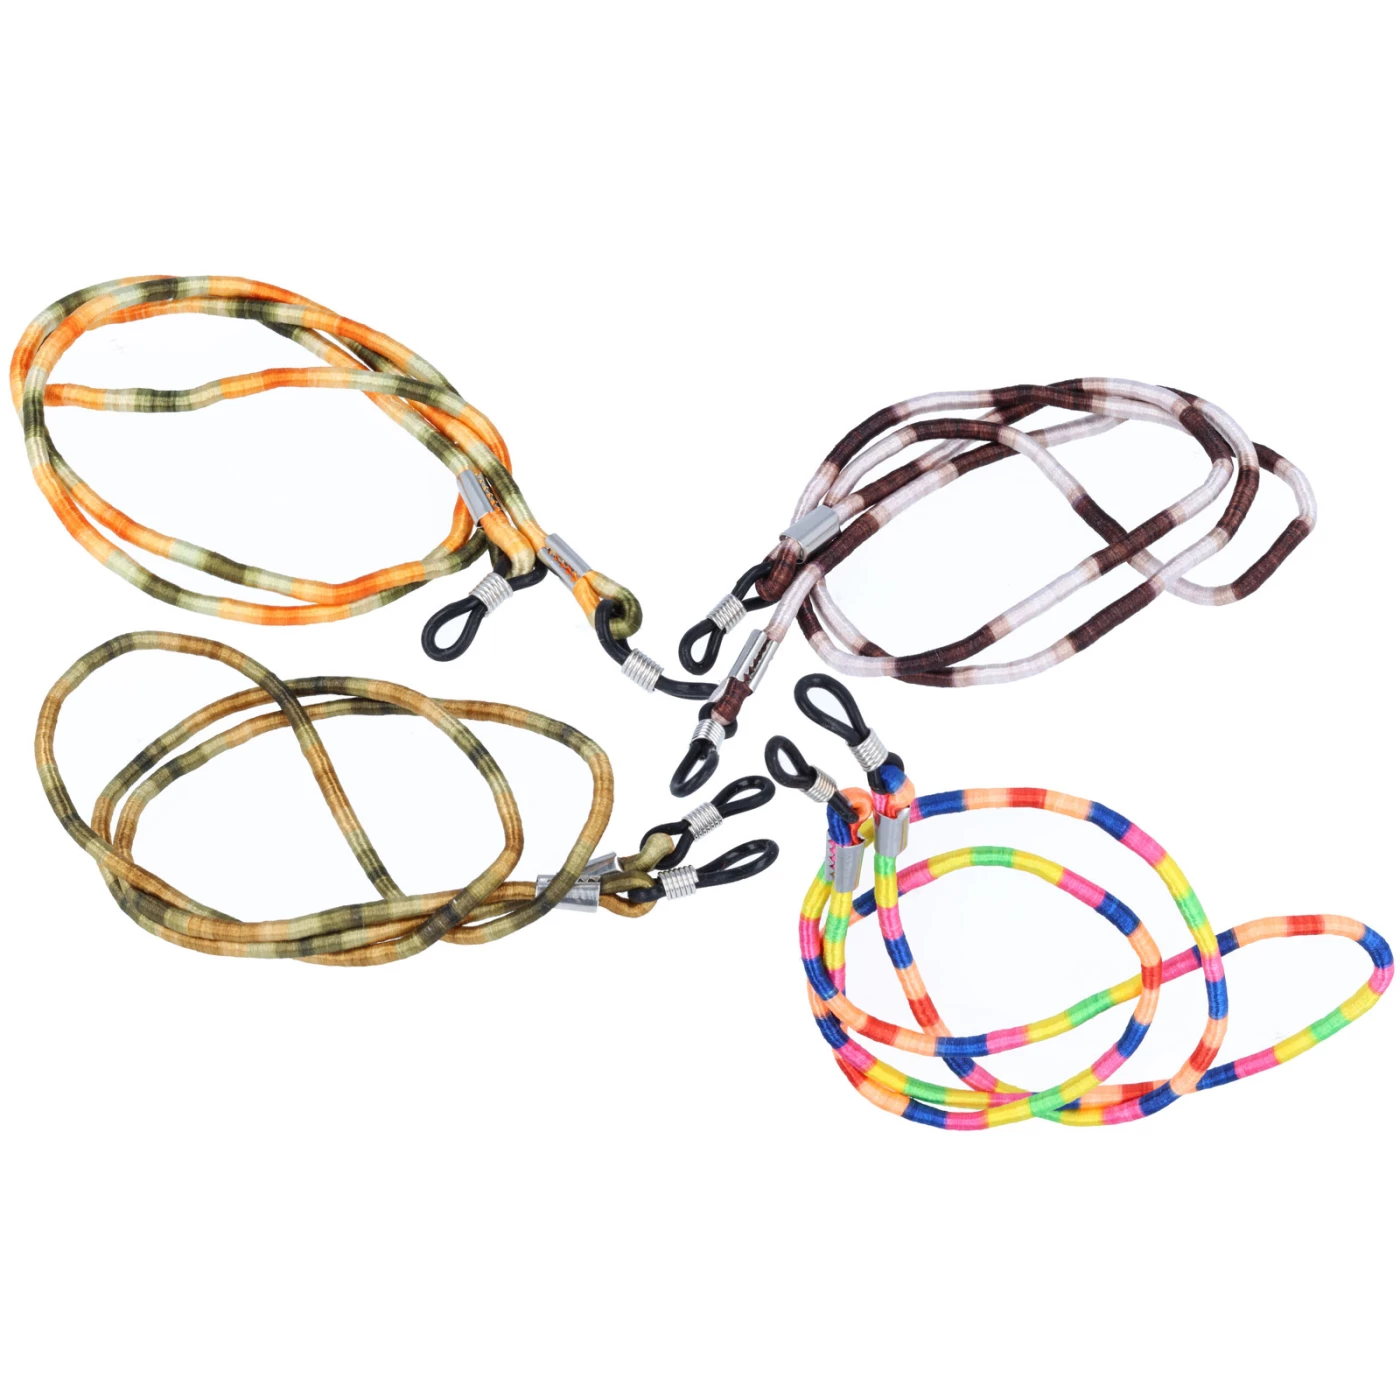 Farbenfrohe Brillenkordel aus glänzendem Stoff